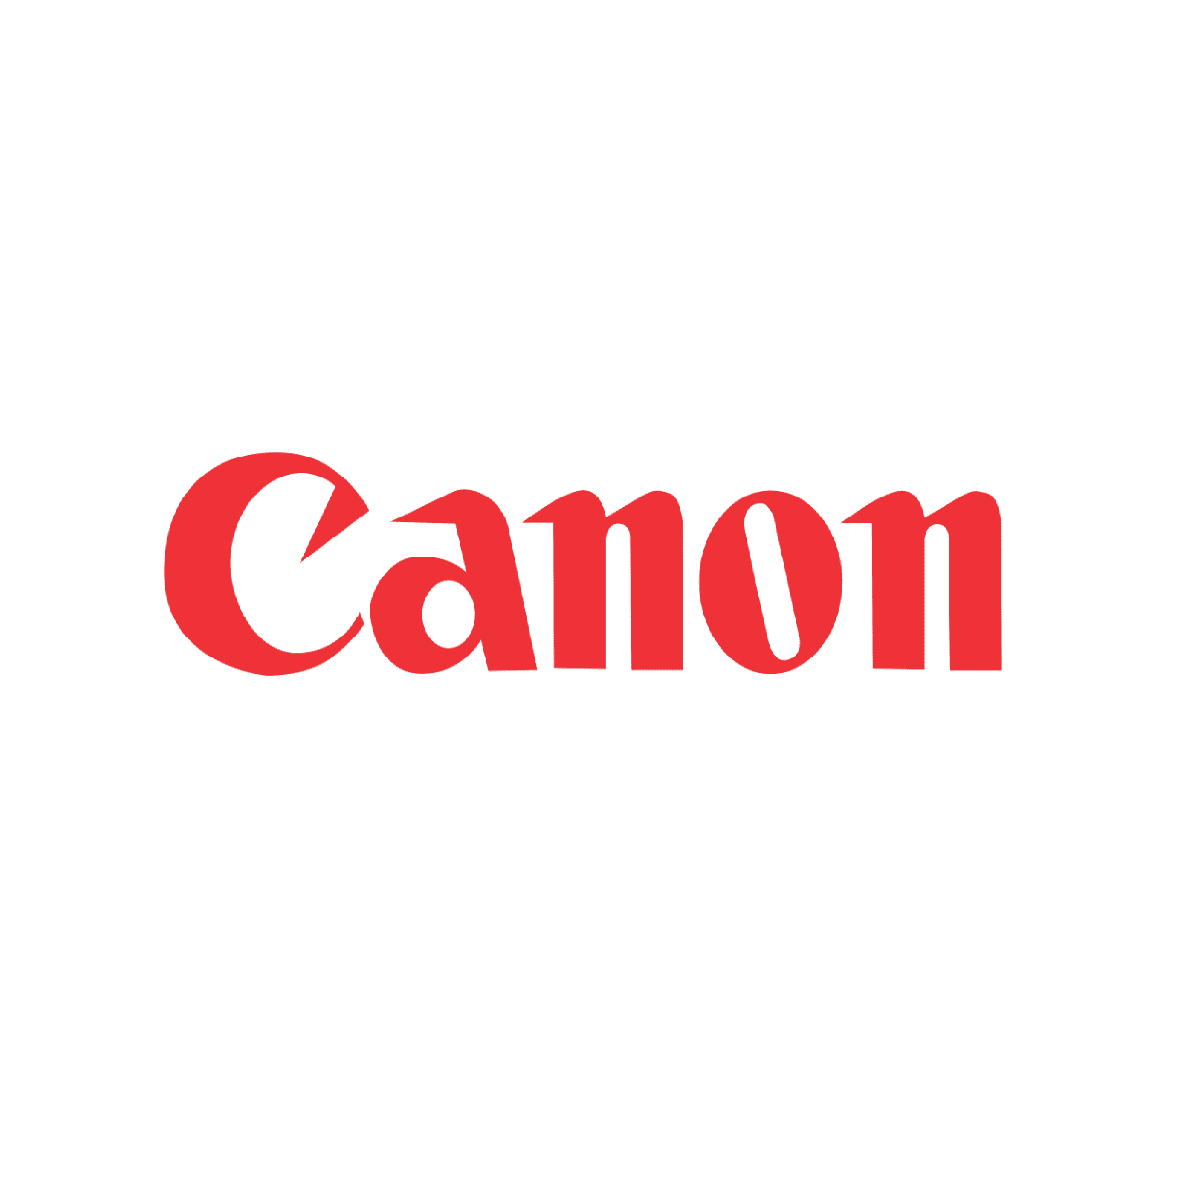 Canon Logo Spartoner24